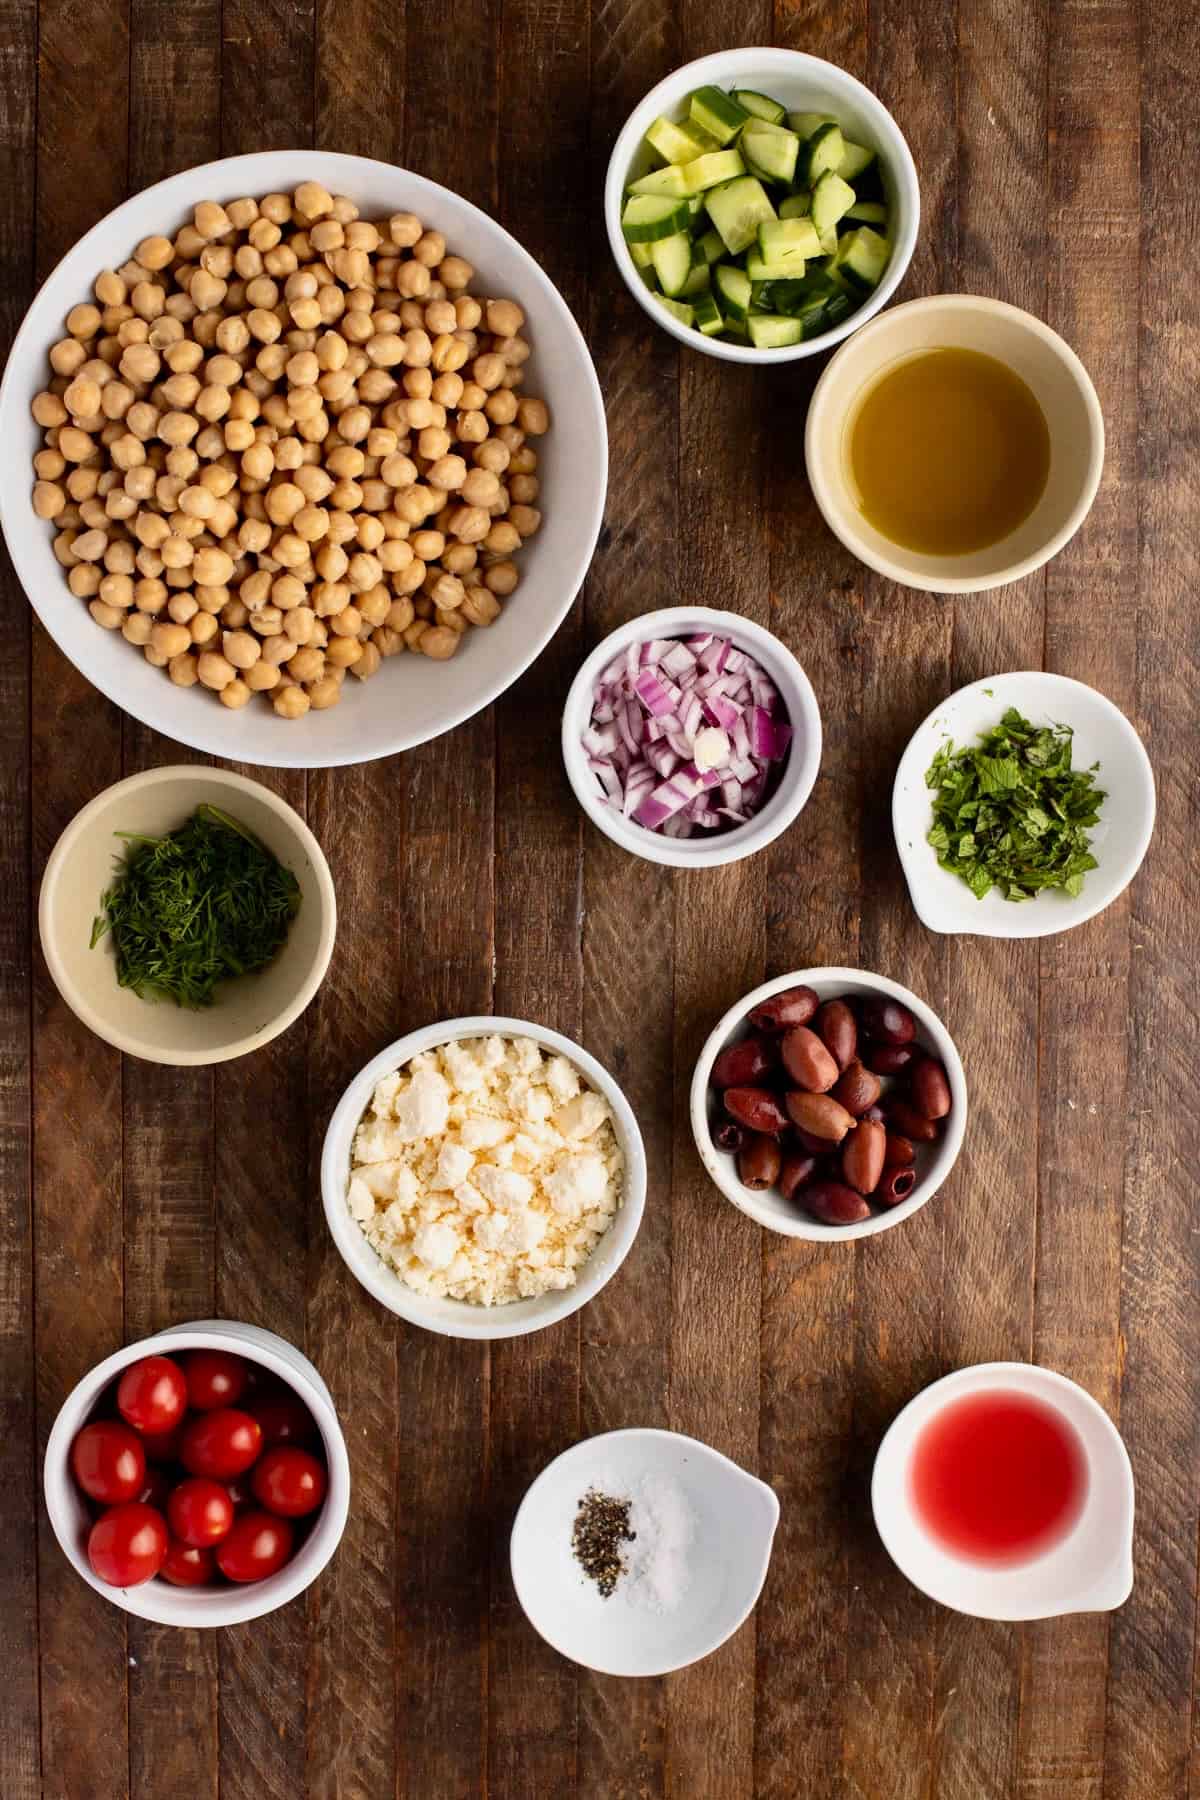 Greek Chickpea salad ingredients